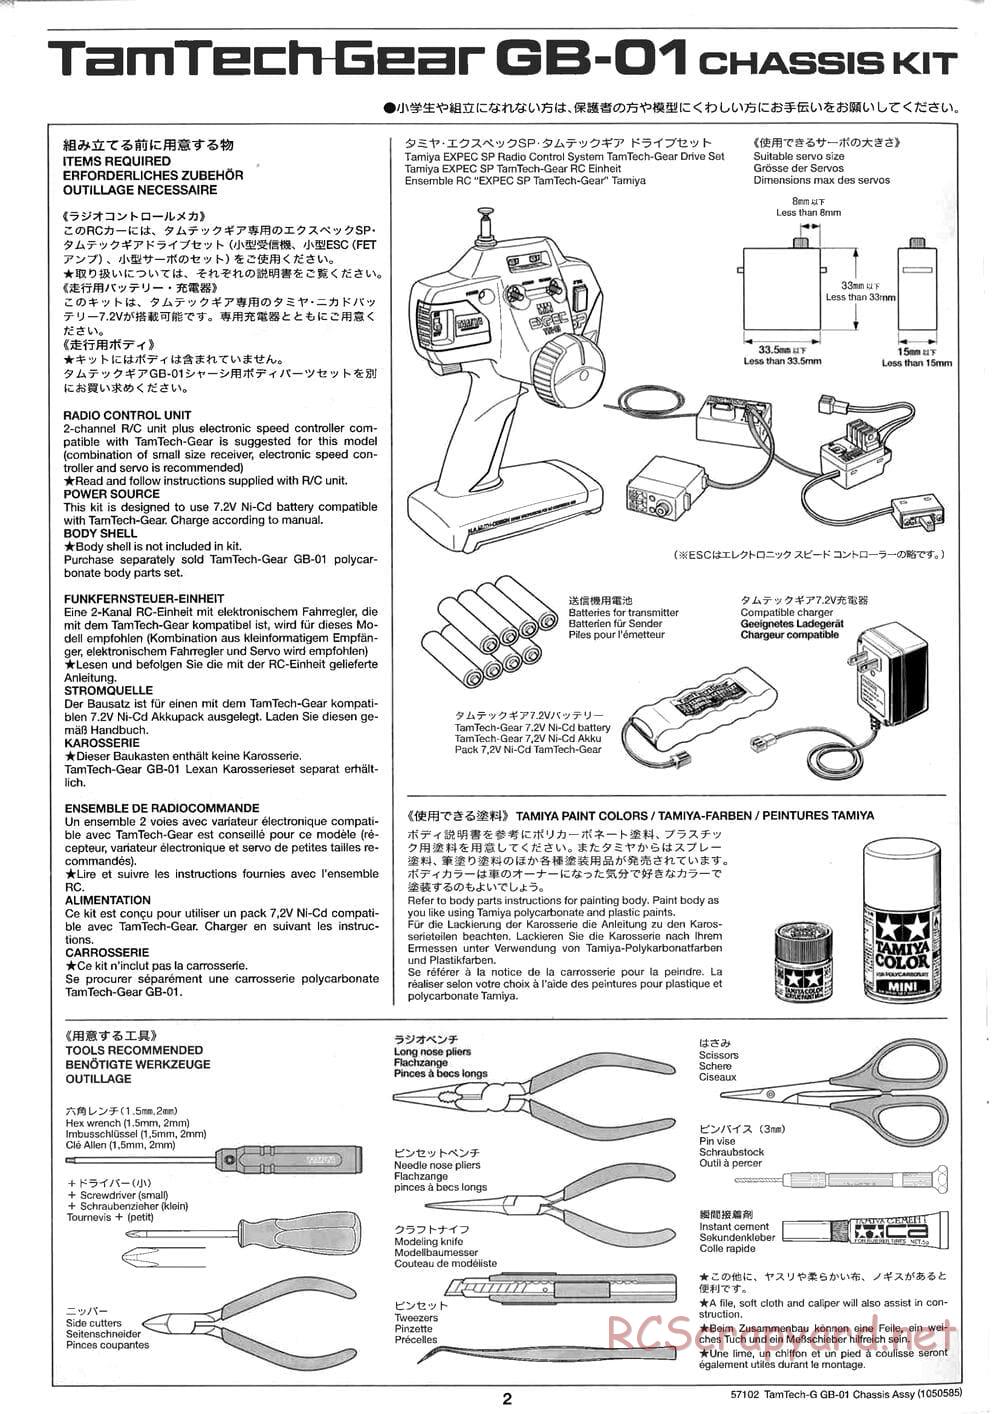 Tamiya - GB-01 Chassis - Manual - Page 2